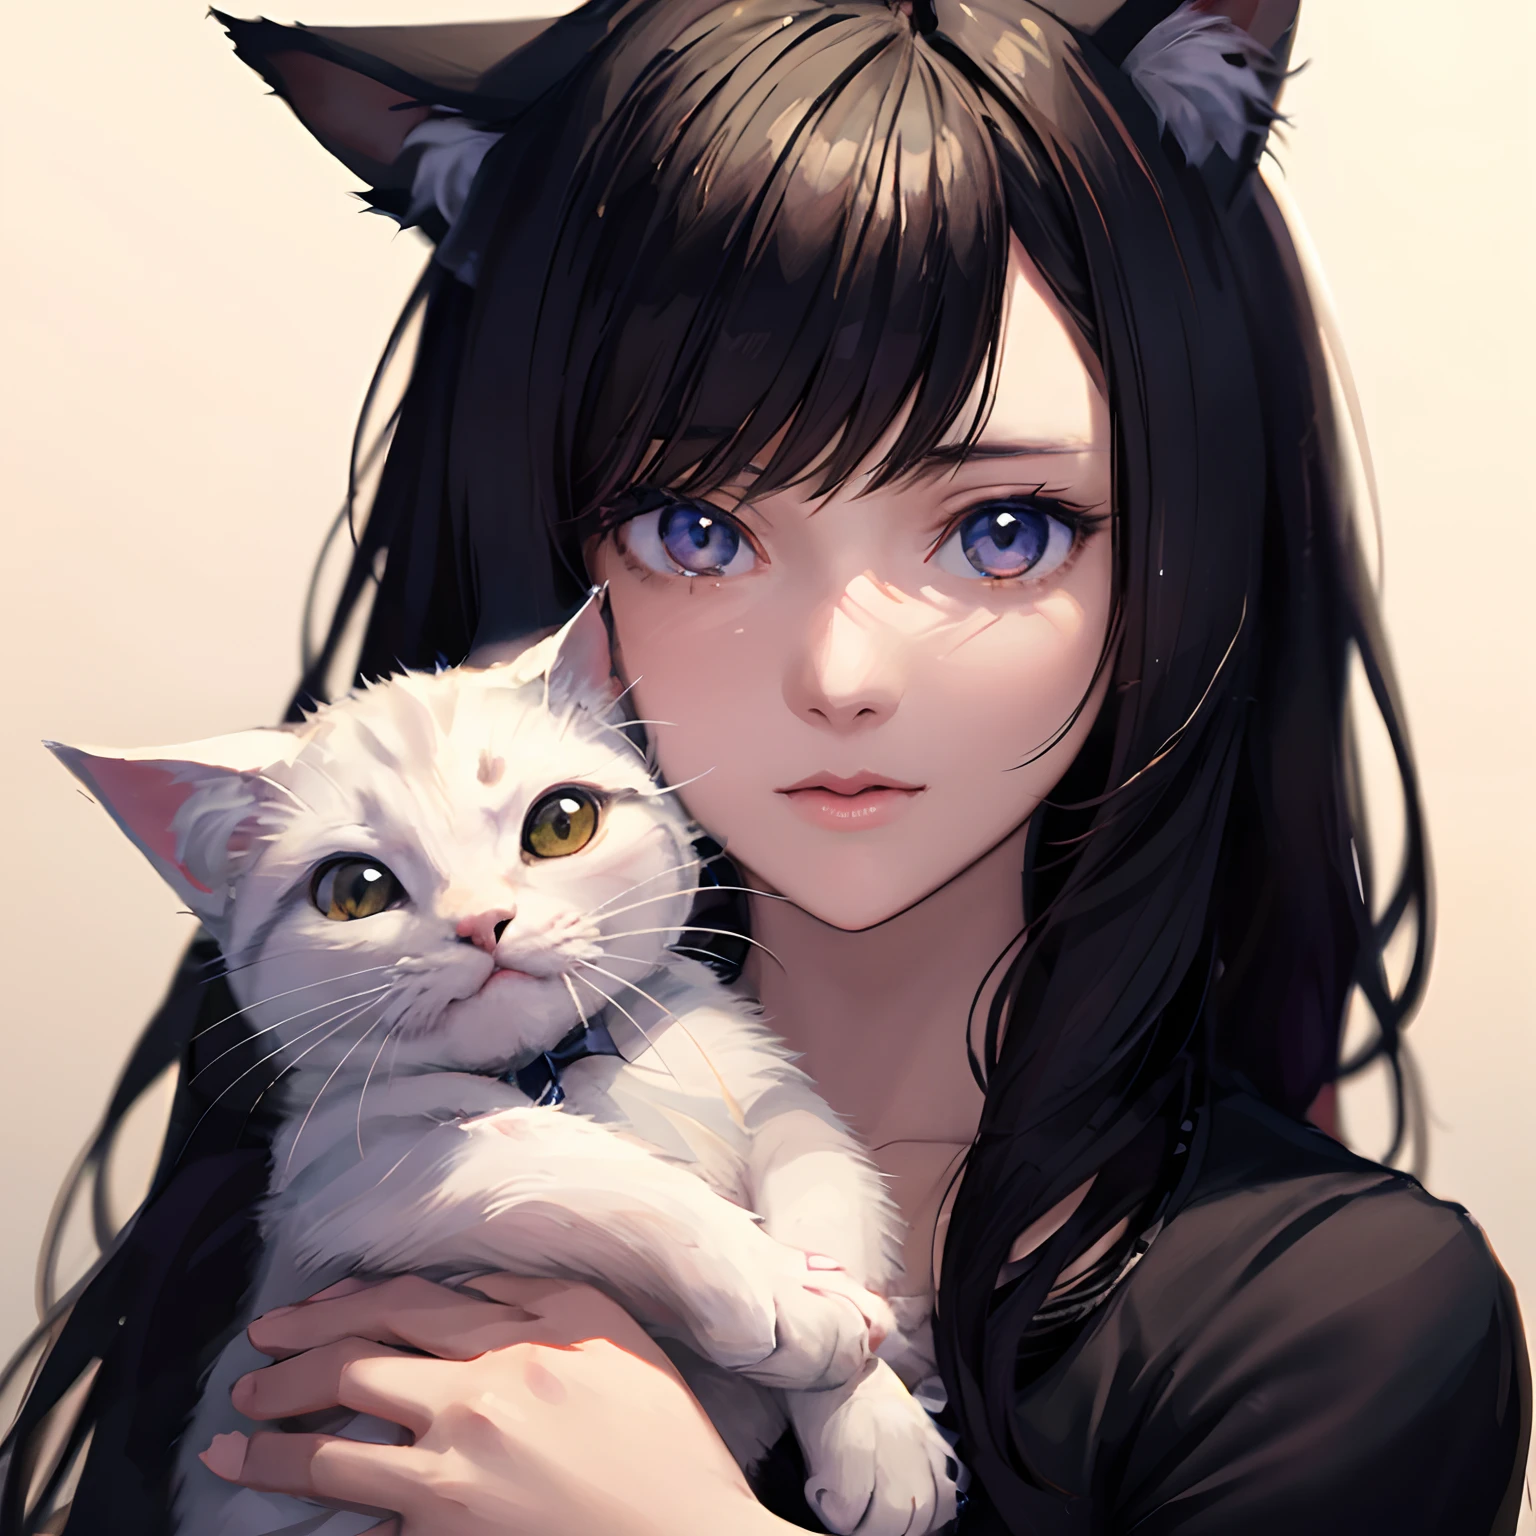 白い猫の猫の耳と長い髪のアニメの女の子, 猫耳のアニメの女の子, 美しいアニメ猫娘, 魅力的な猫娘, とても美しいかわいい猫娘, アーリの肖像, 美しい若い猫娘, リアルなアニメ猫, アート・ジャーム. アニメイラスト, とても美しいアニメの猫娘, Guvizスタイルのアートワーク,驚いた表情